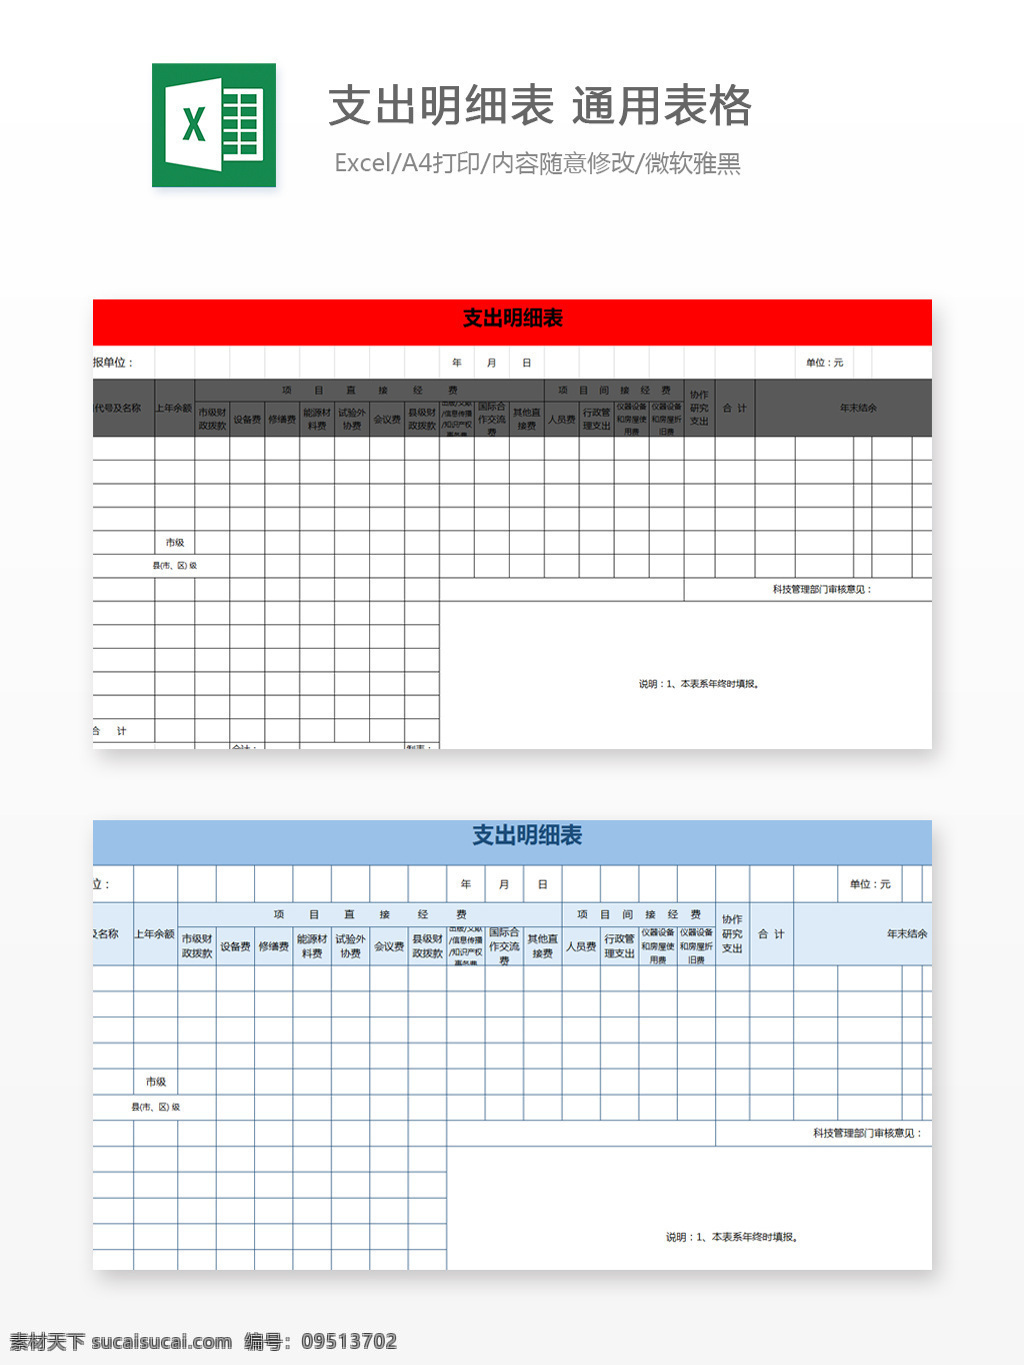 支出明细表 通用 表格 excel 文档 图表 图表模板 模板 自动变换 表格设计 财务 出纳 费用报表